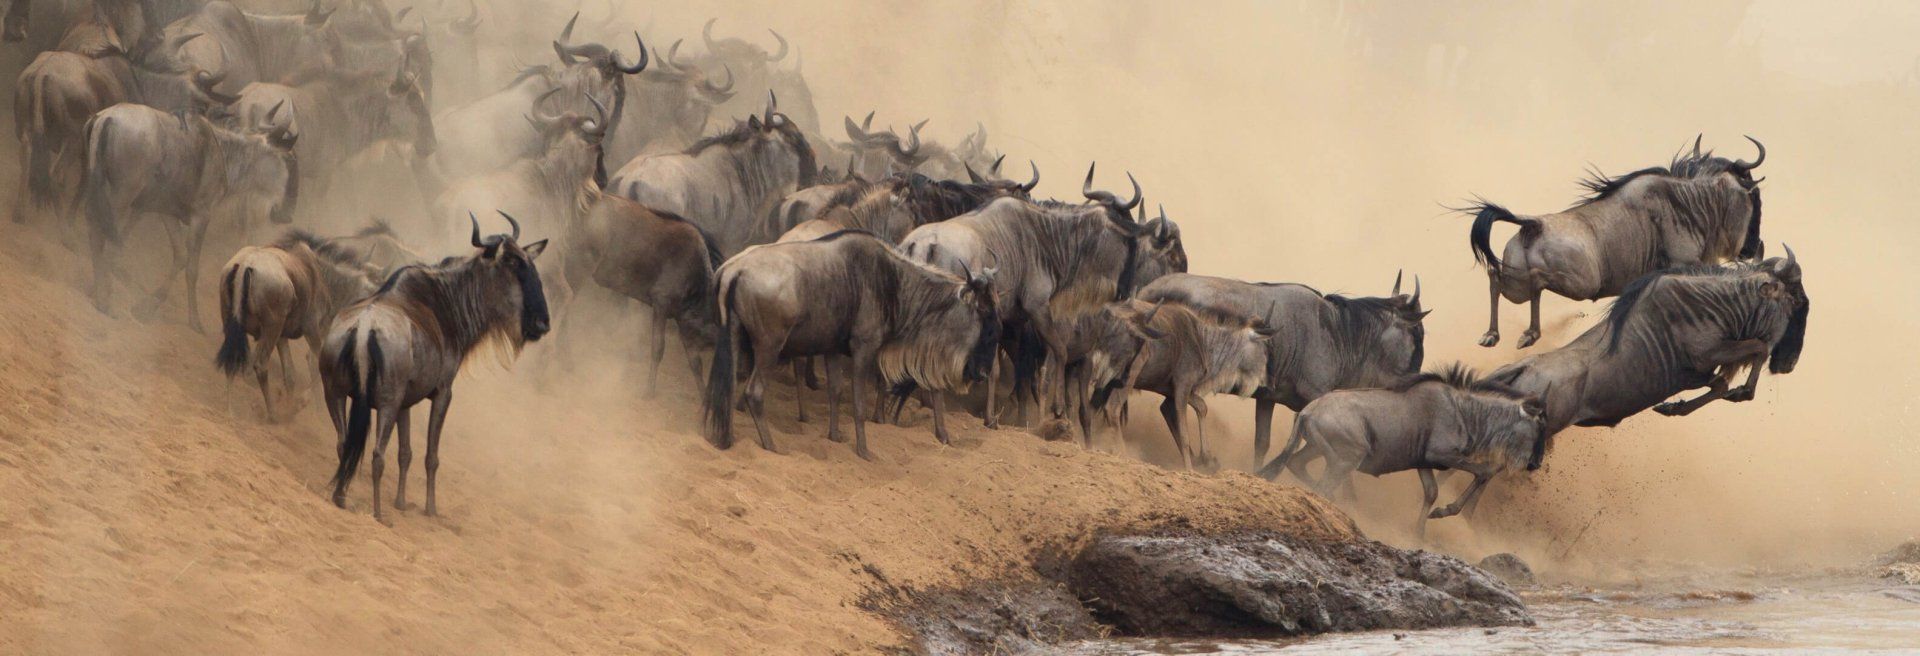 kenya safaris great wildebeest migration